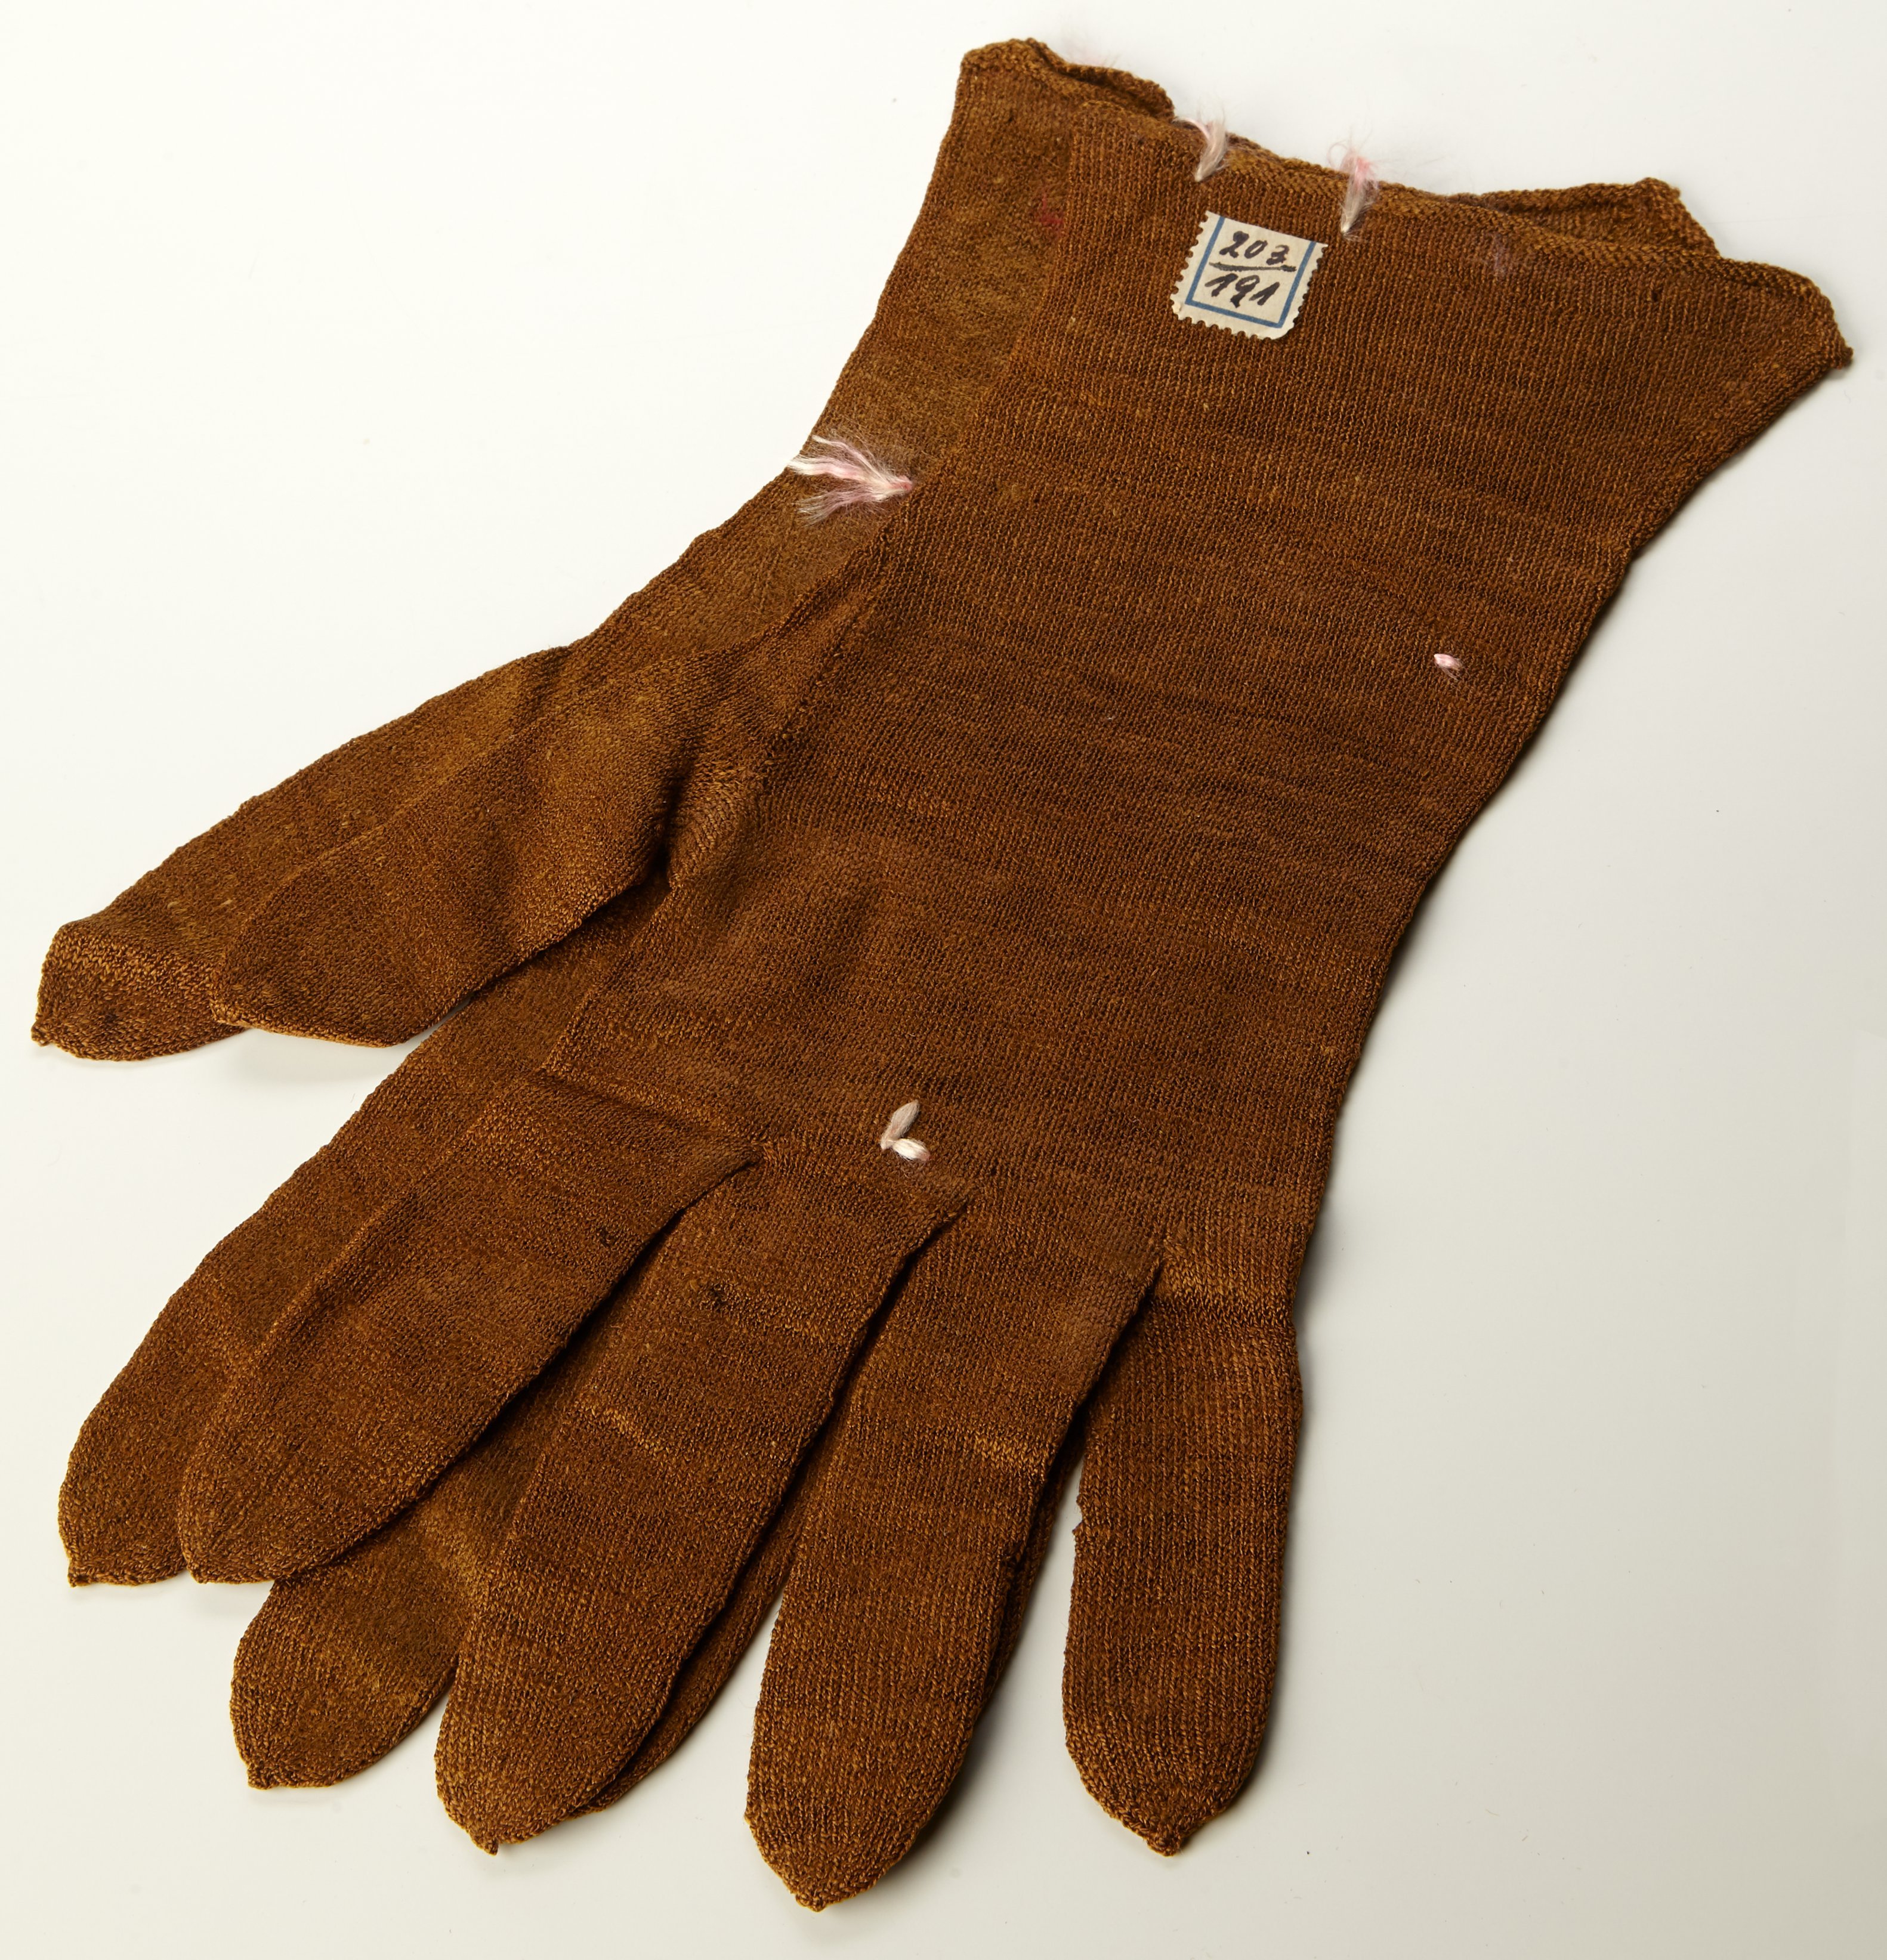 Dieses Objekt ist ein Beispiel dafür, wie wichtig im Museum eine gute Dokumentation ist. Über die Jahrhunderte ging das Wissen um diese Handschuhe verloren (Staatliche Schlösser und Gärten Hessen CC BY-SA)